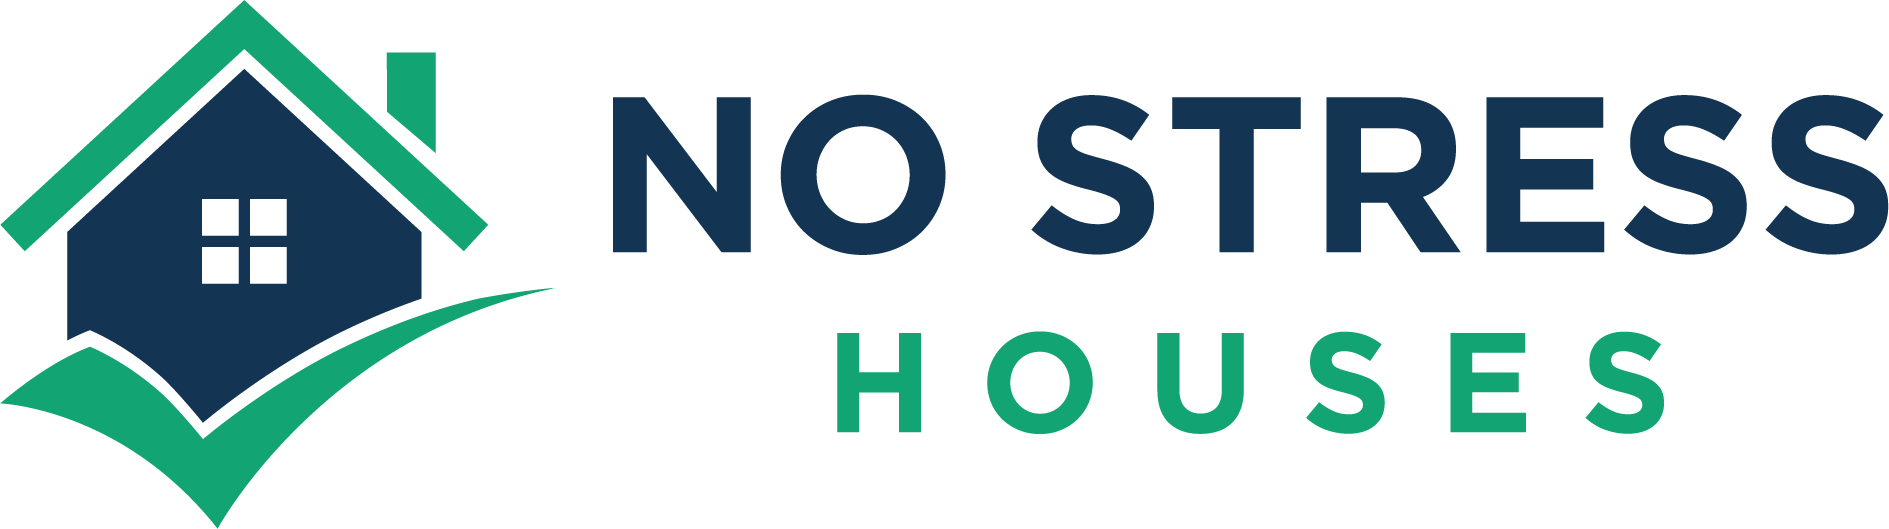 No Stress Houses logo